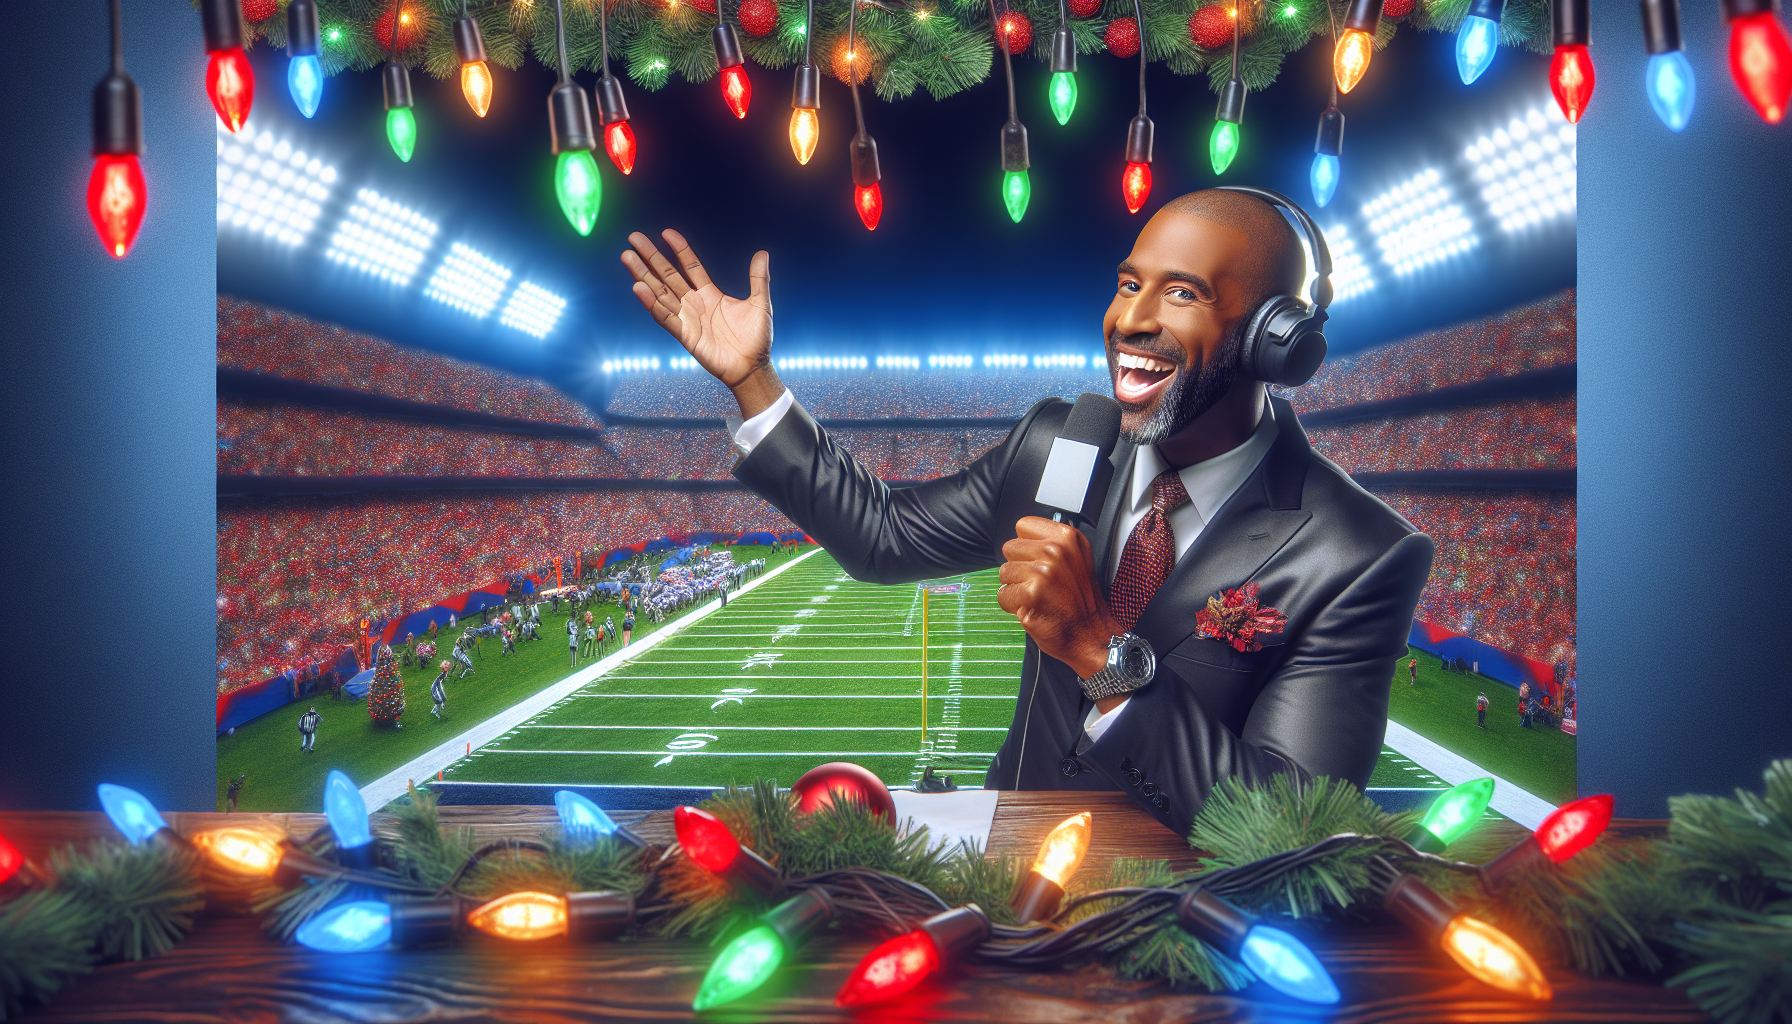 Finden Sie heraus, wer der ultimative Kommentator für die NFL-Weihnachtsspiele von Netflix sein wird, und machen Sie sich bereit für ein aufregendes Fernseherlebnis!